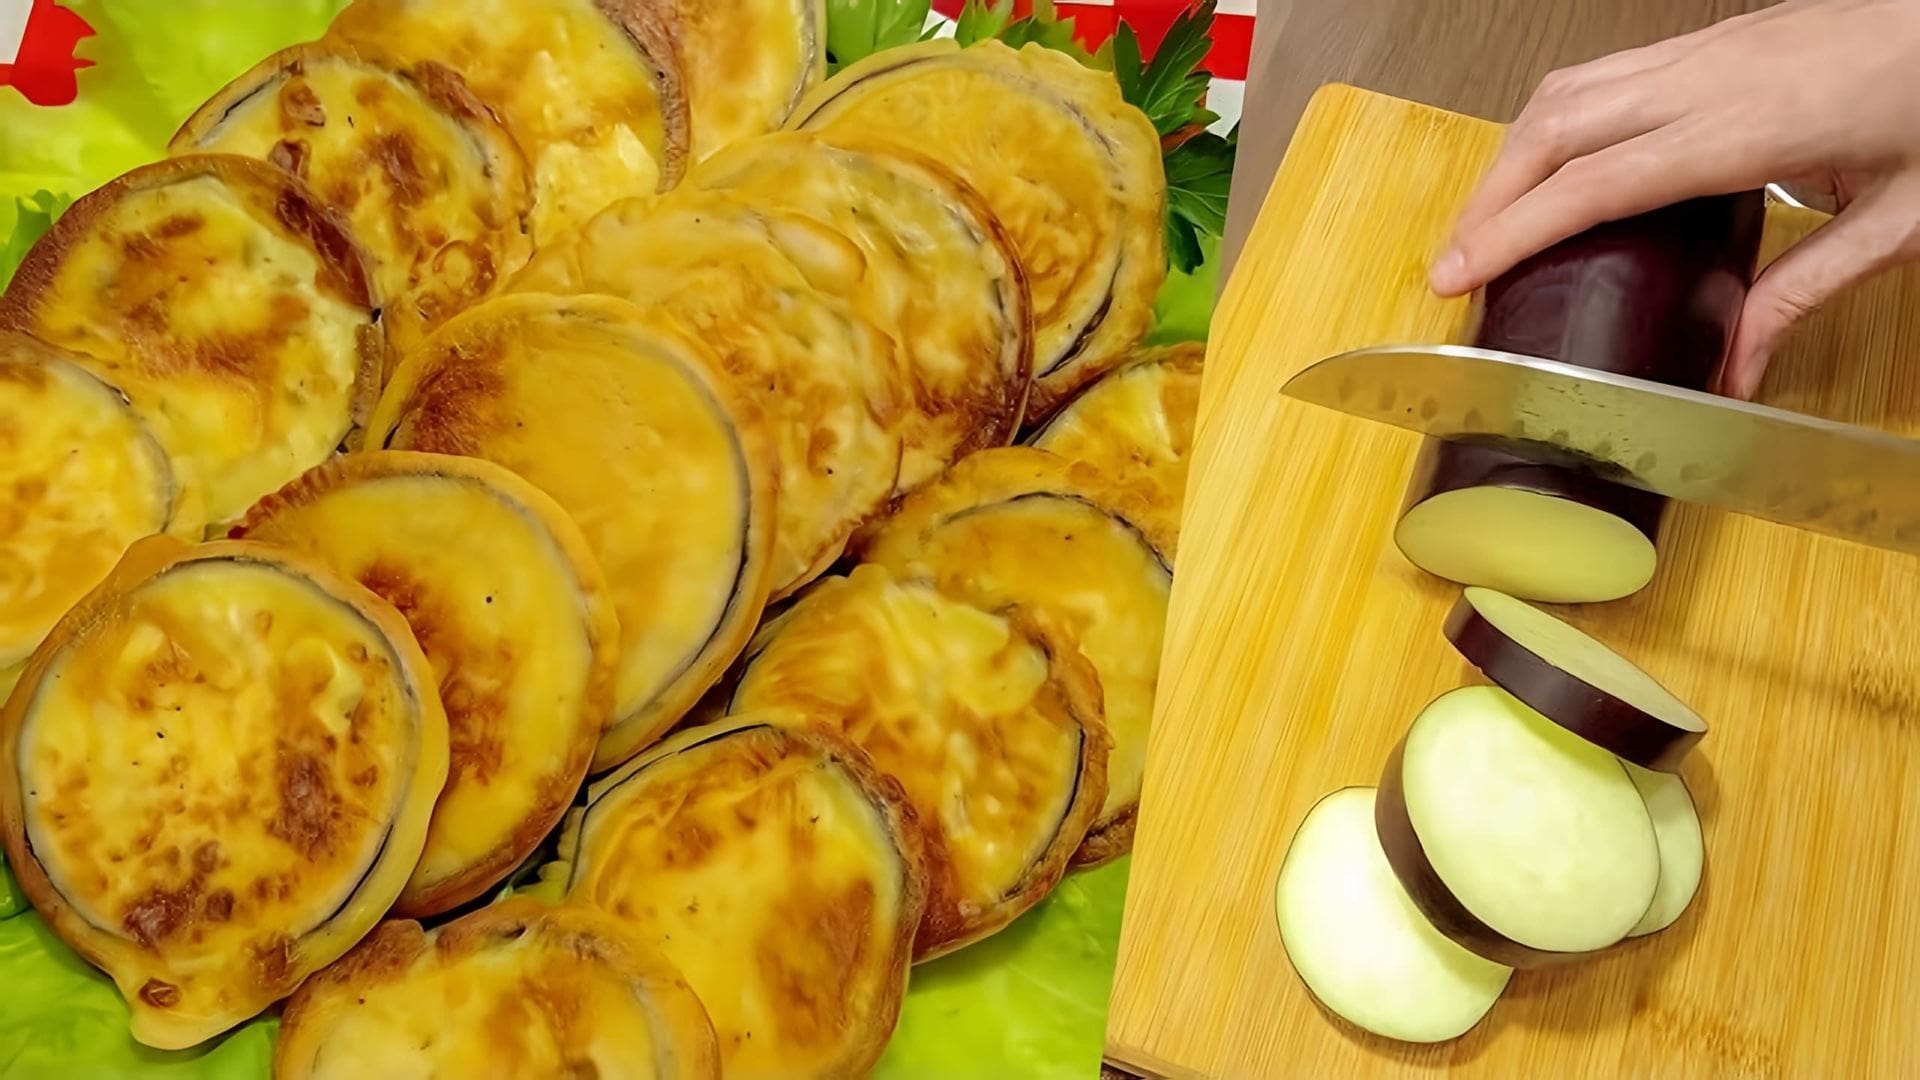 В этом видео демонстрируется рецепт приготовления баклажанов в кляре